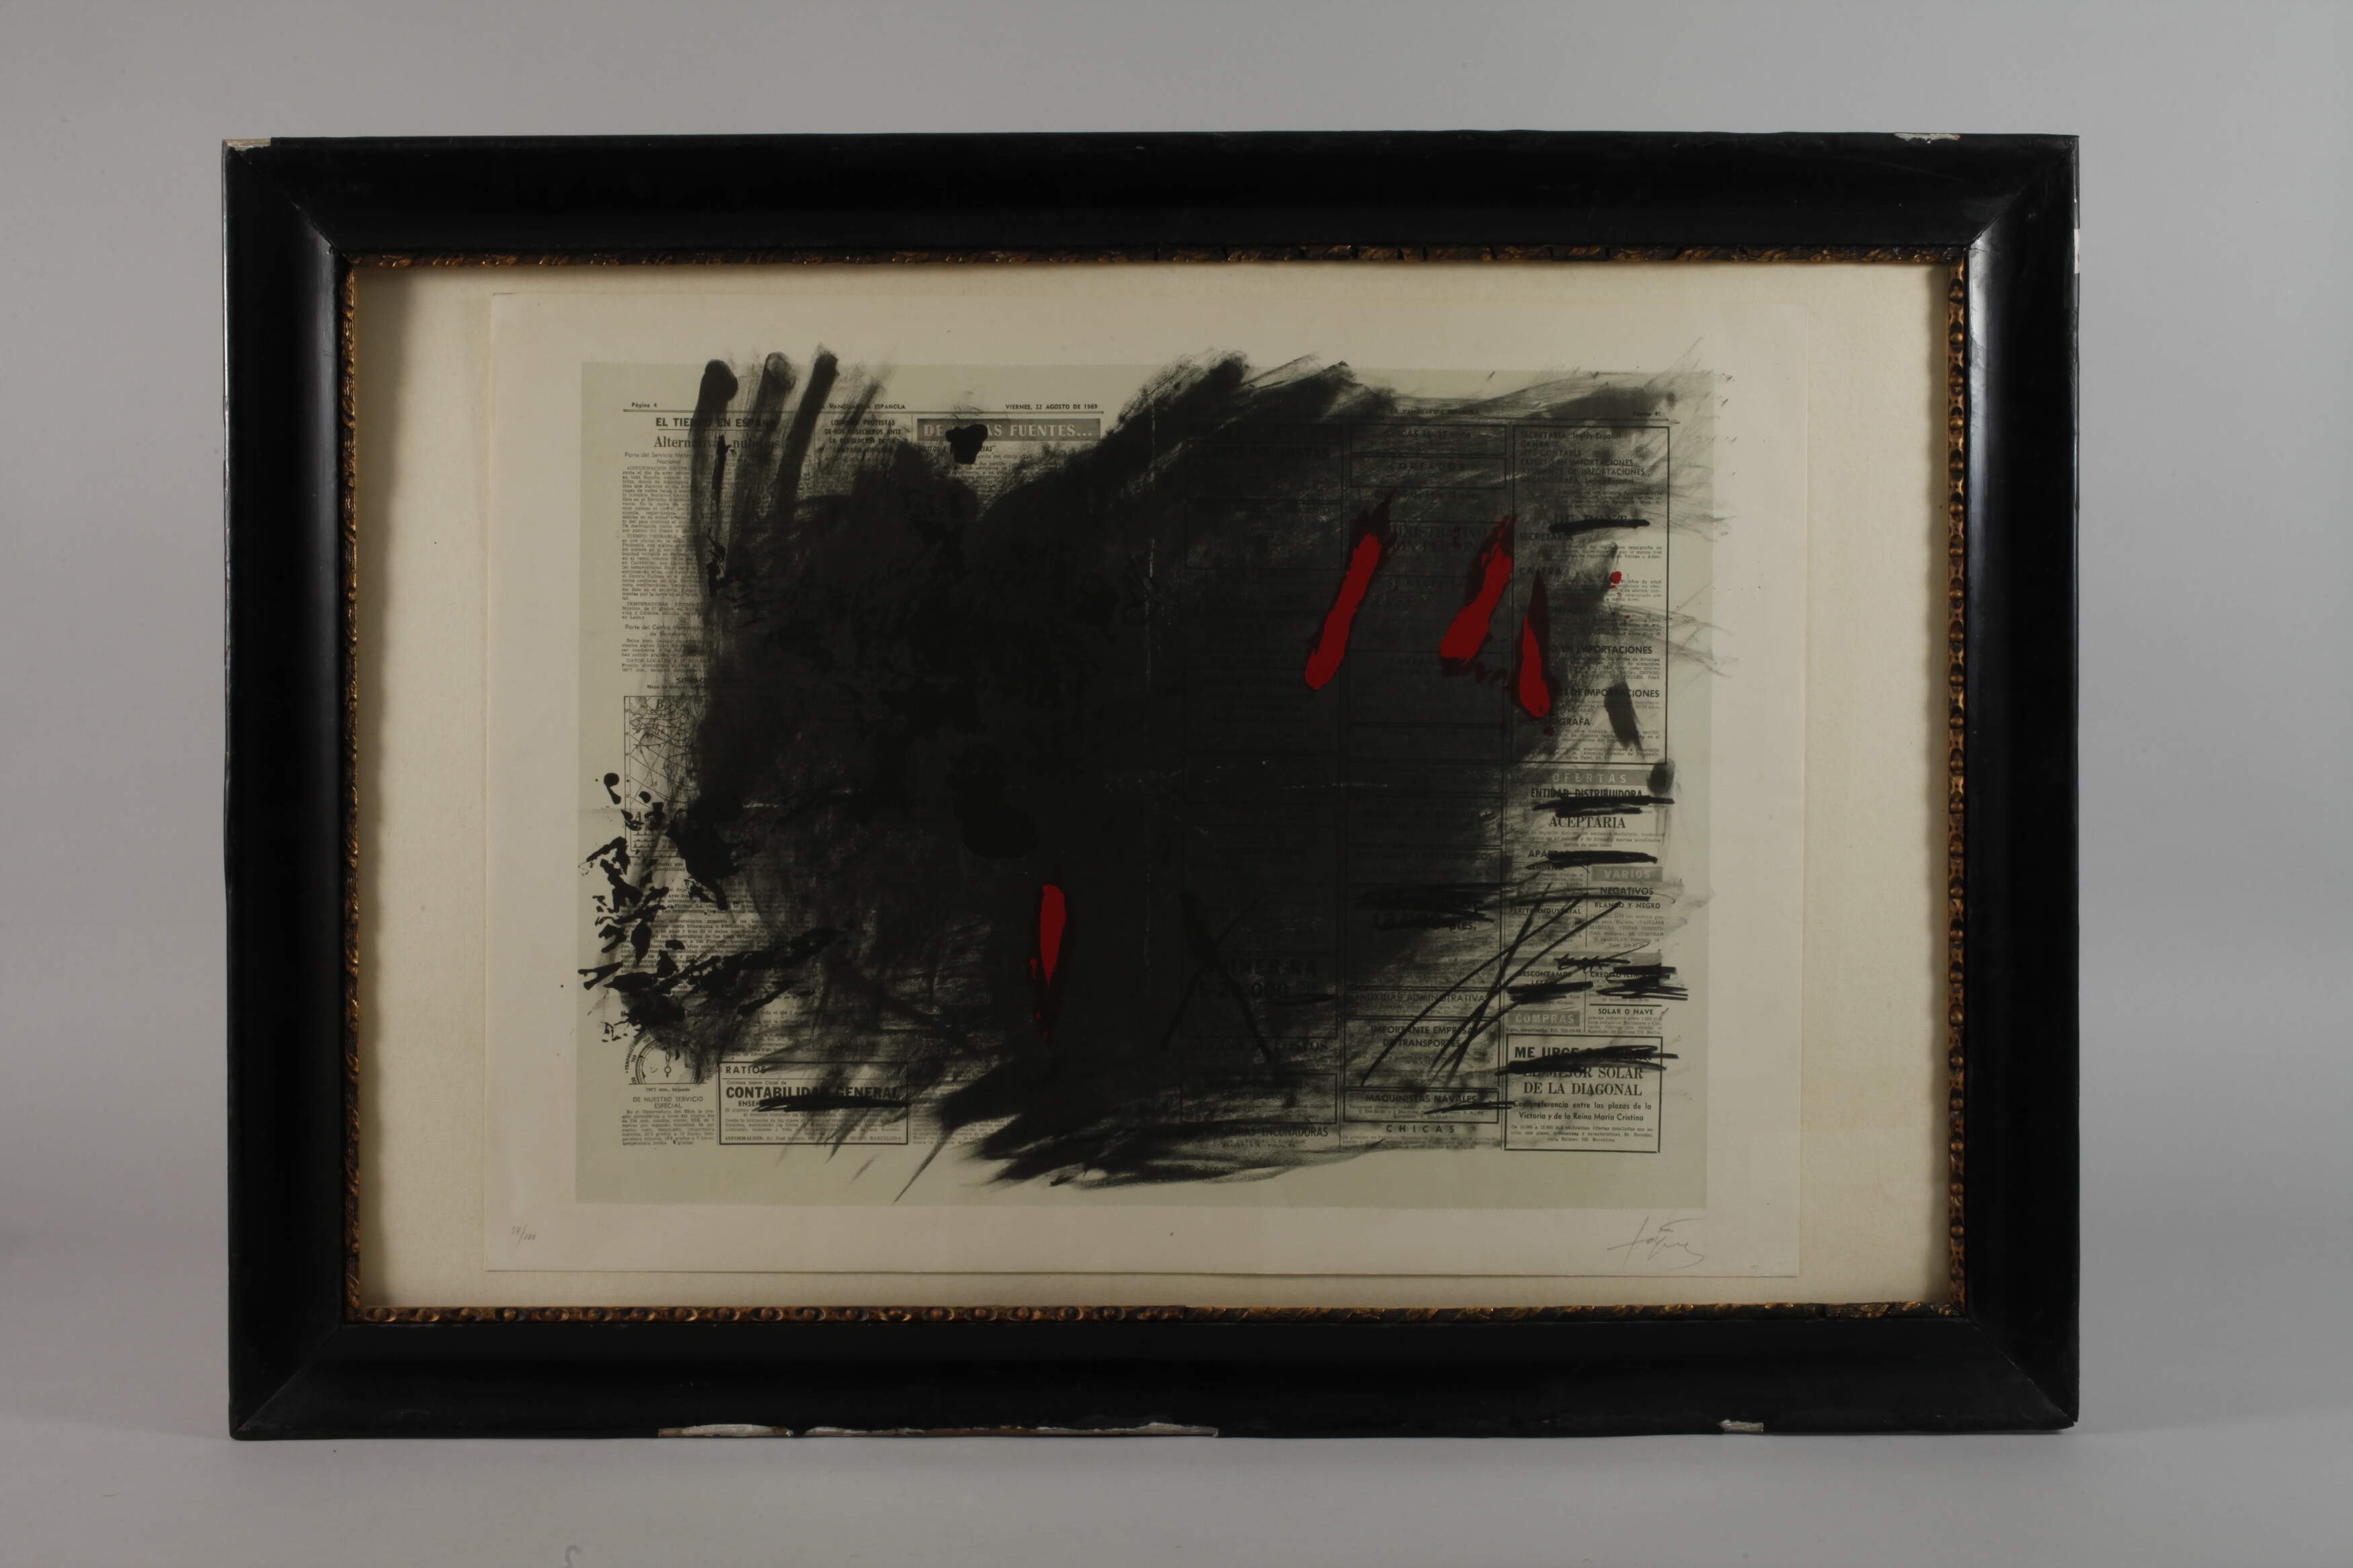 Antoni Tàpies, "Noctum matinal" - Image 2 of 3